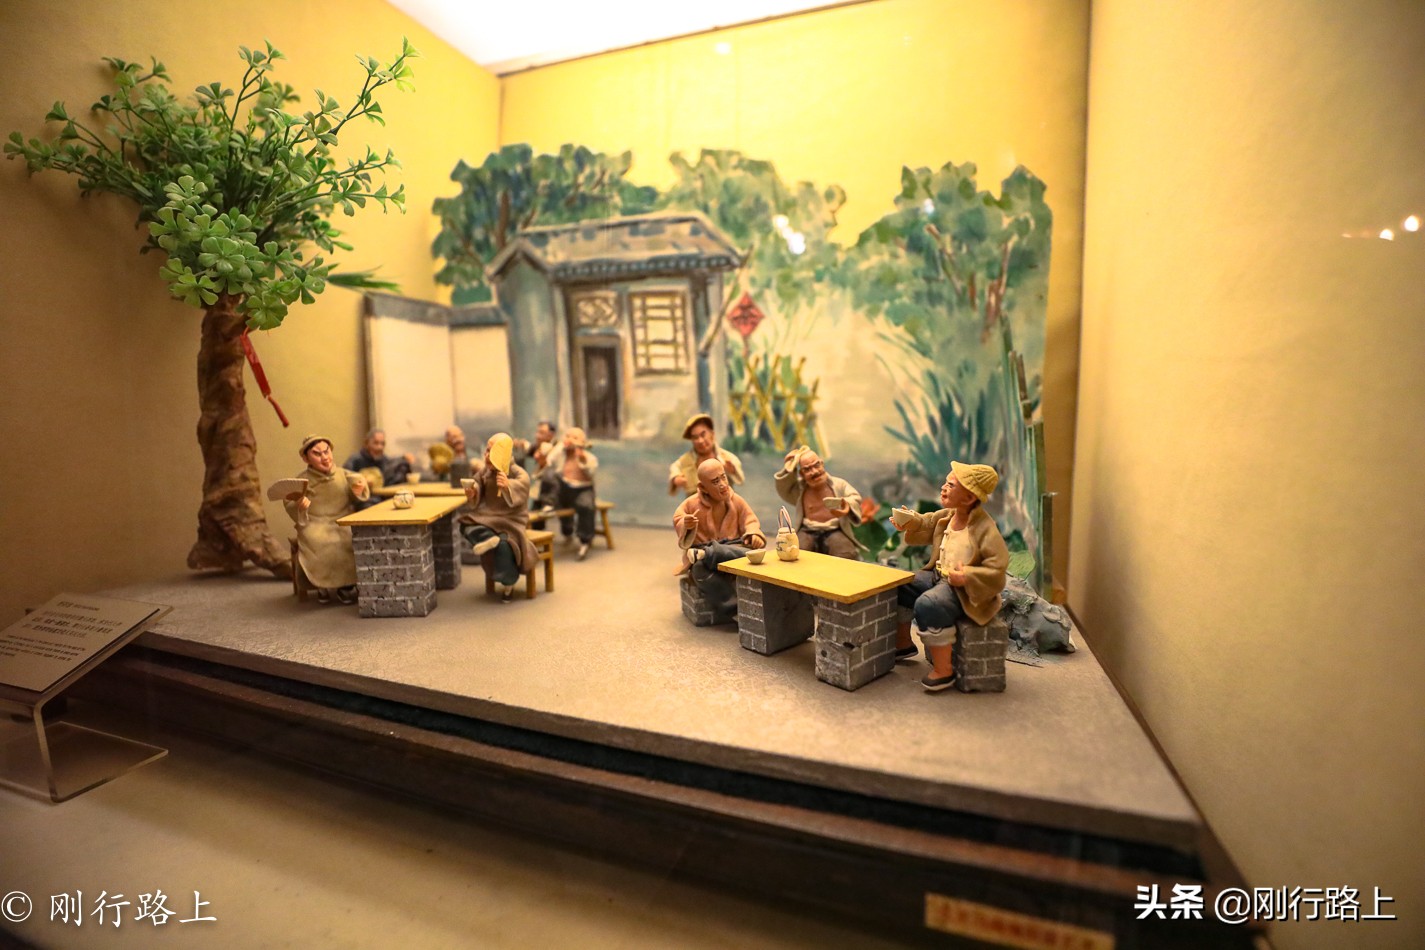 很多人到北京旅游，来老舍茶馆却是因为老舍这个名字